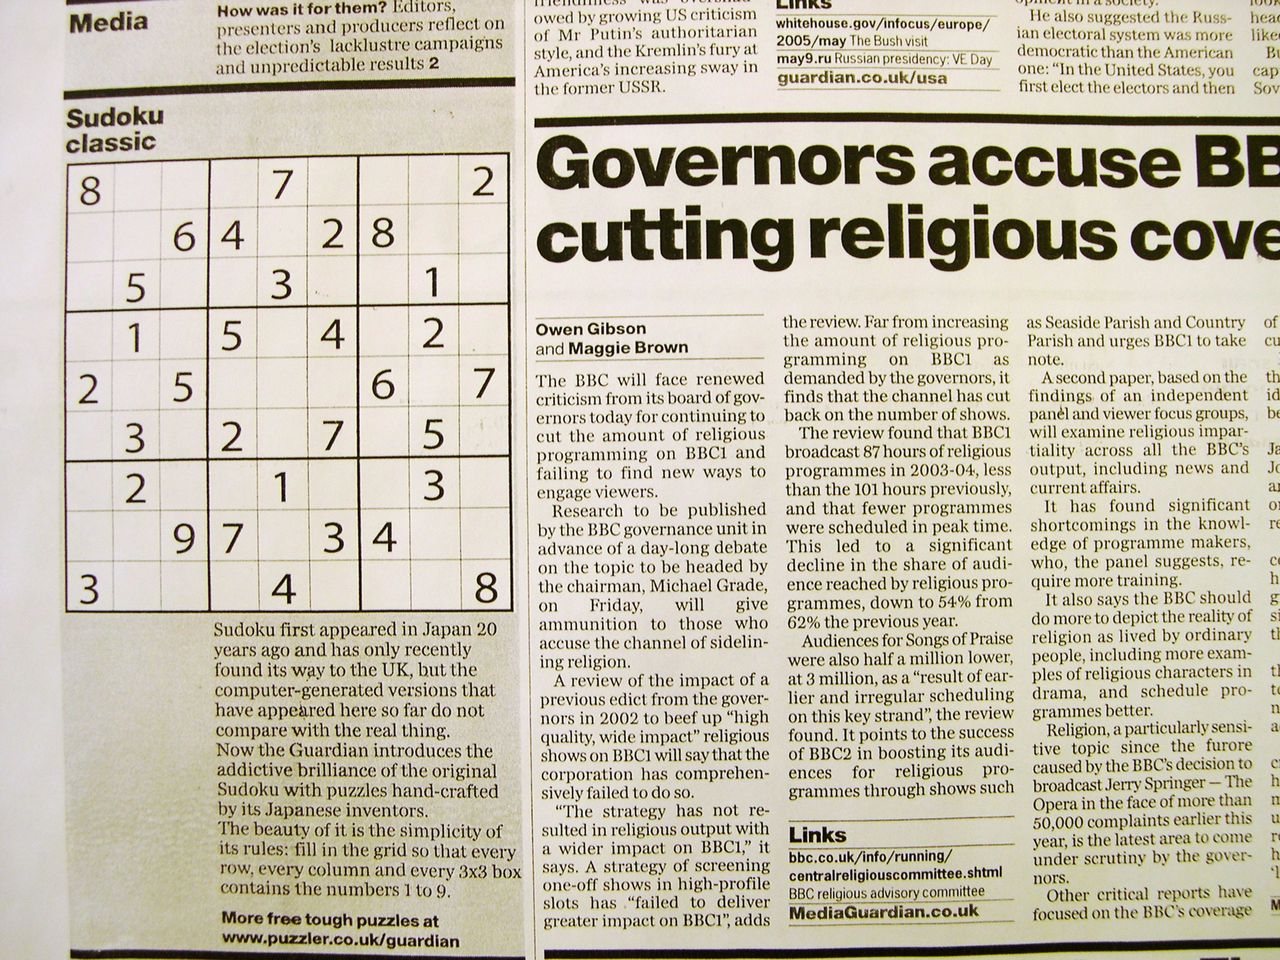 Grille de sudoku publiée dans The Guardian du 15 mai 2005 (Jiji Press)